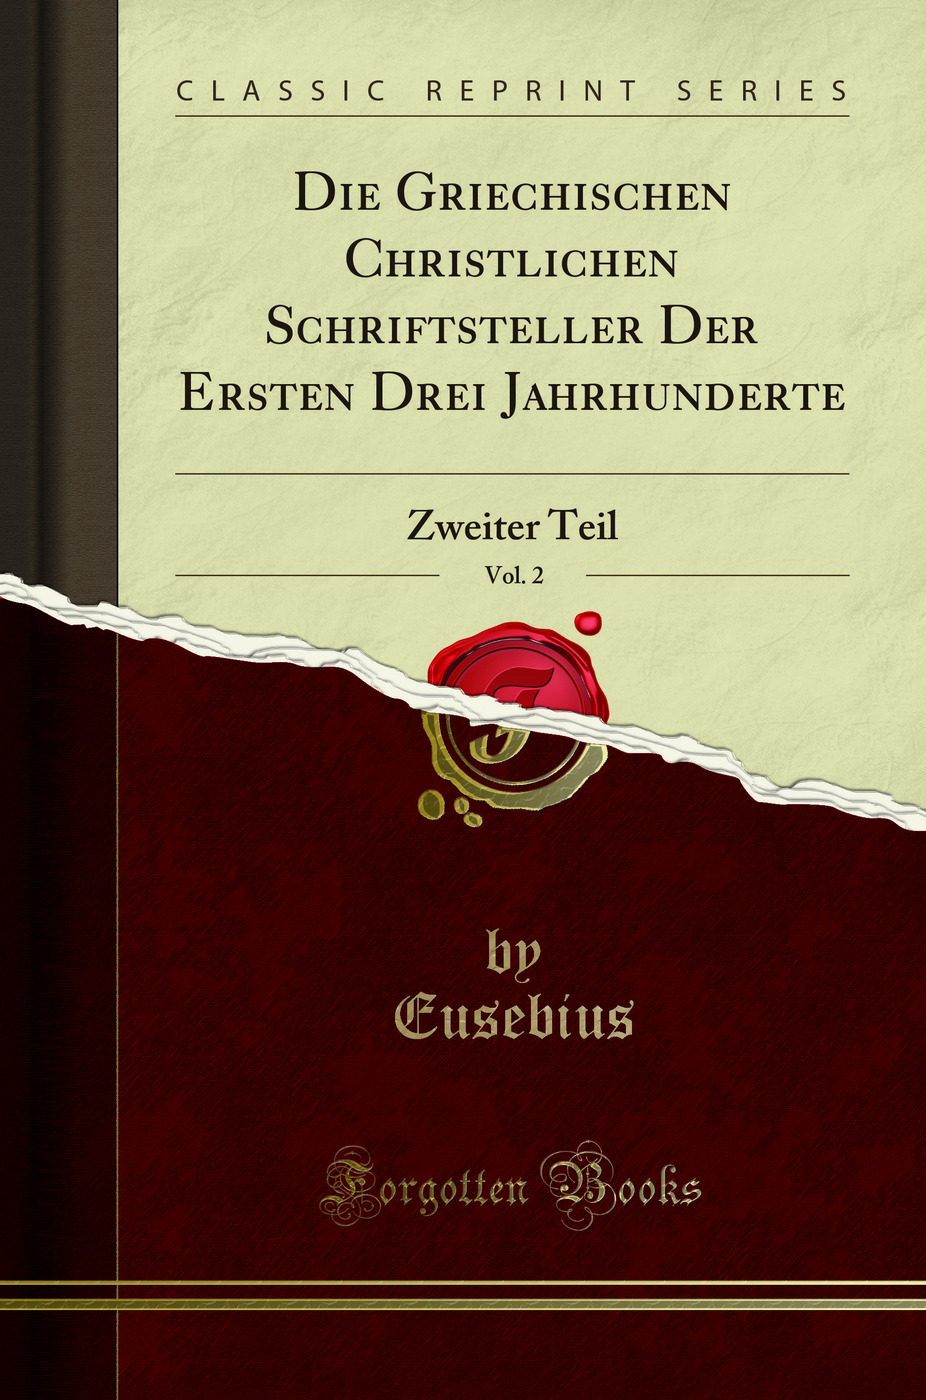 Die Griechischen Christlichen Schriftsteller Der Ersten Drei Jahrhunderte, Vol - Eusebius